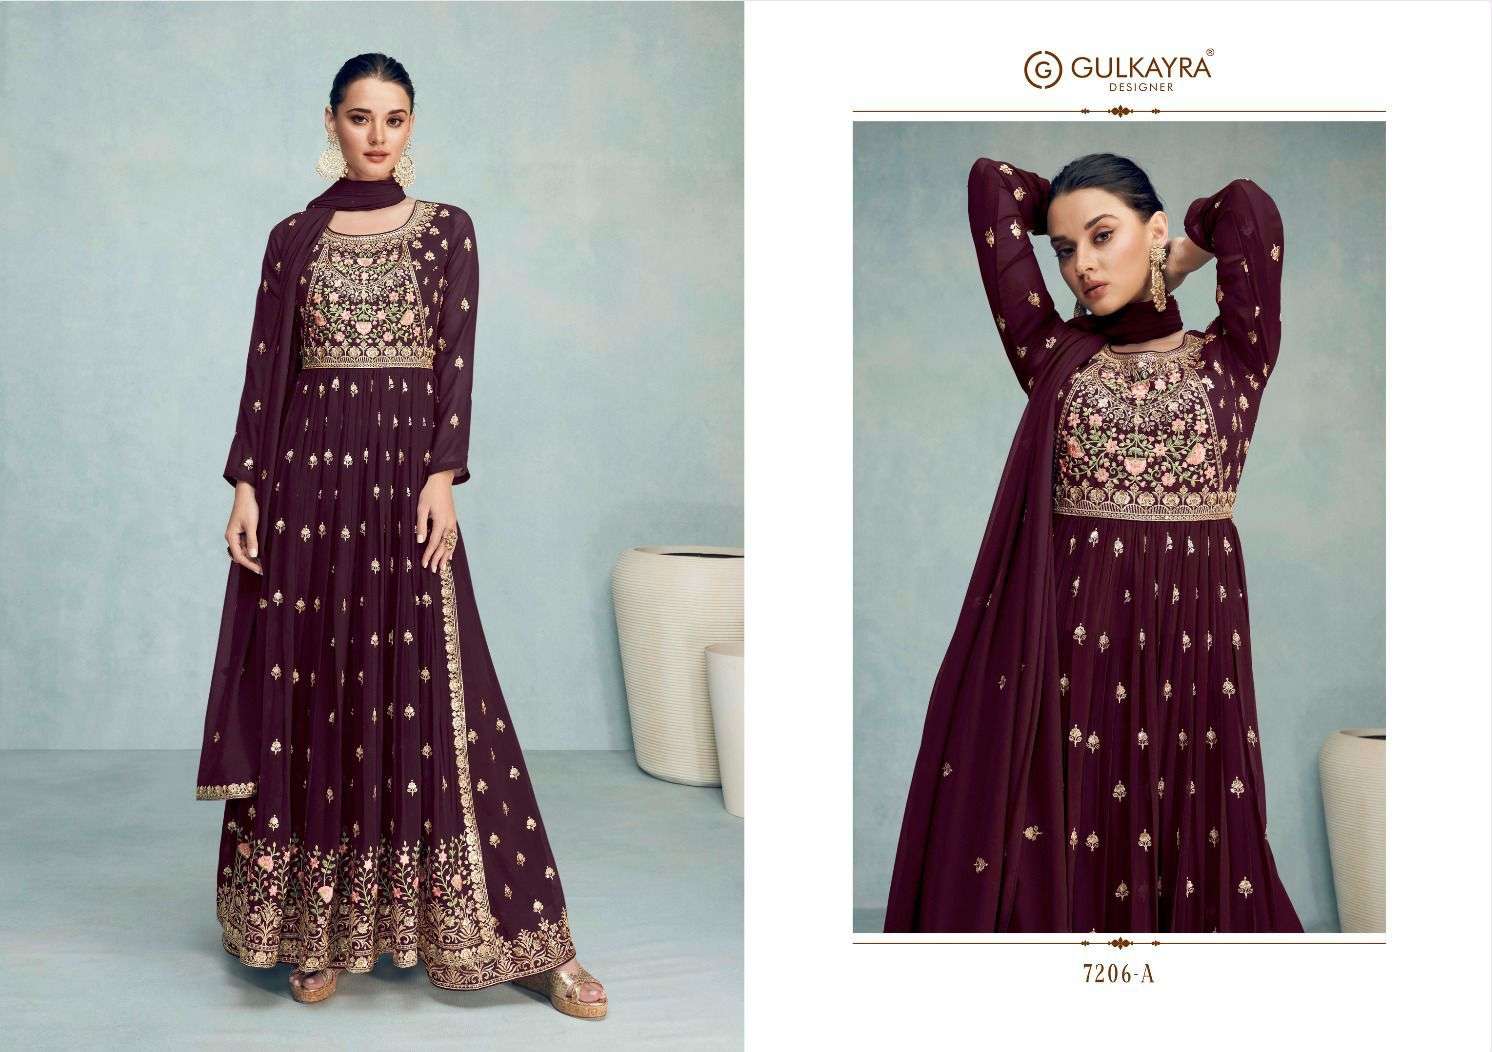 gulkayra designer nayra vol-6 7206 series exclusive designer salwar suits catalogue wholesale price surat